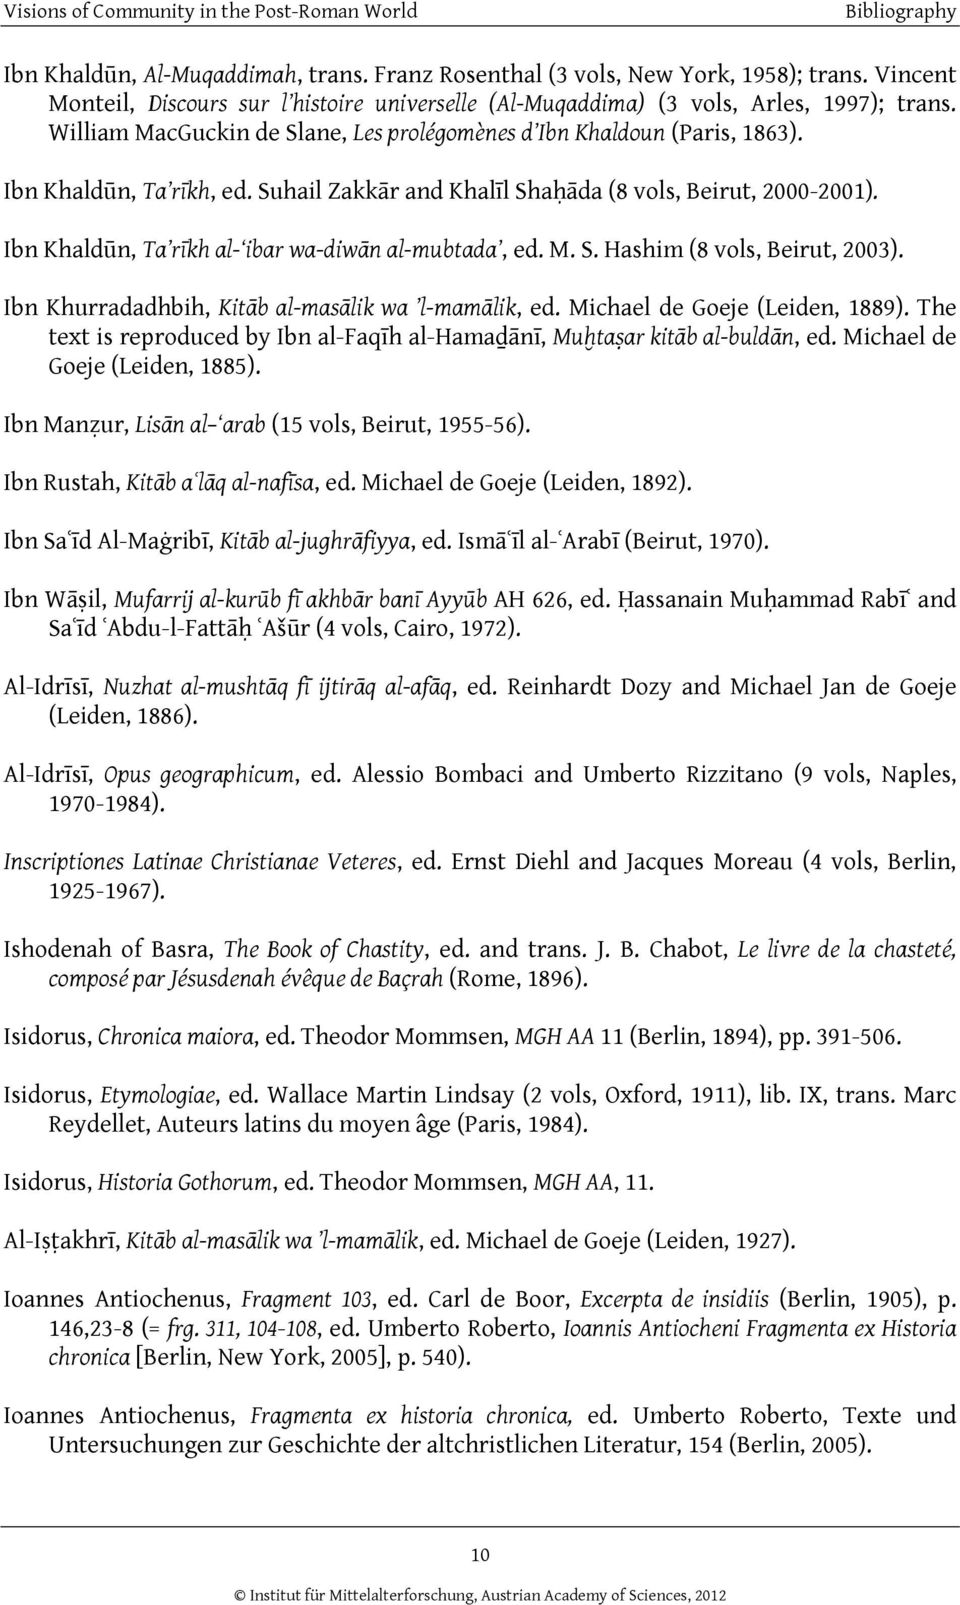 Ibn Khaldūn, Ta rīkh al- ibar wa-diwān al-mubtada, ed. M. S. Hashim (8 vols, Beirut, 2003). Ibn Khurradadhbih, Kitāb al-masālik wa l-mamālik, ed. Michael de Goeje (Leiden, 1889).